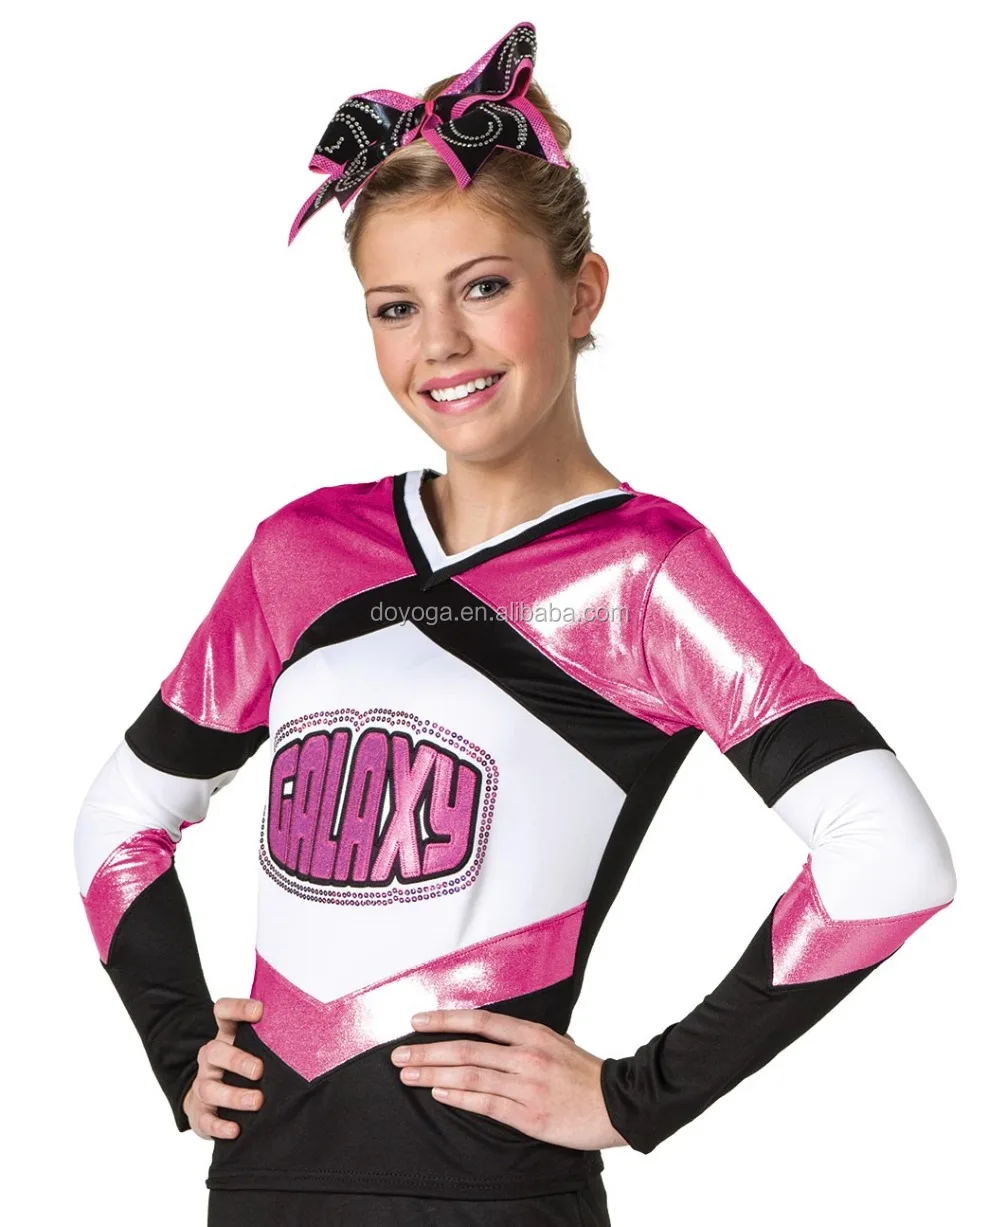 Черно розовая форма. Стиль одежды cheerleader.